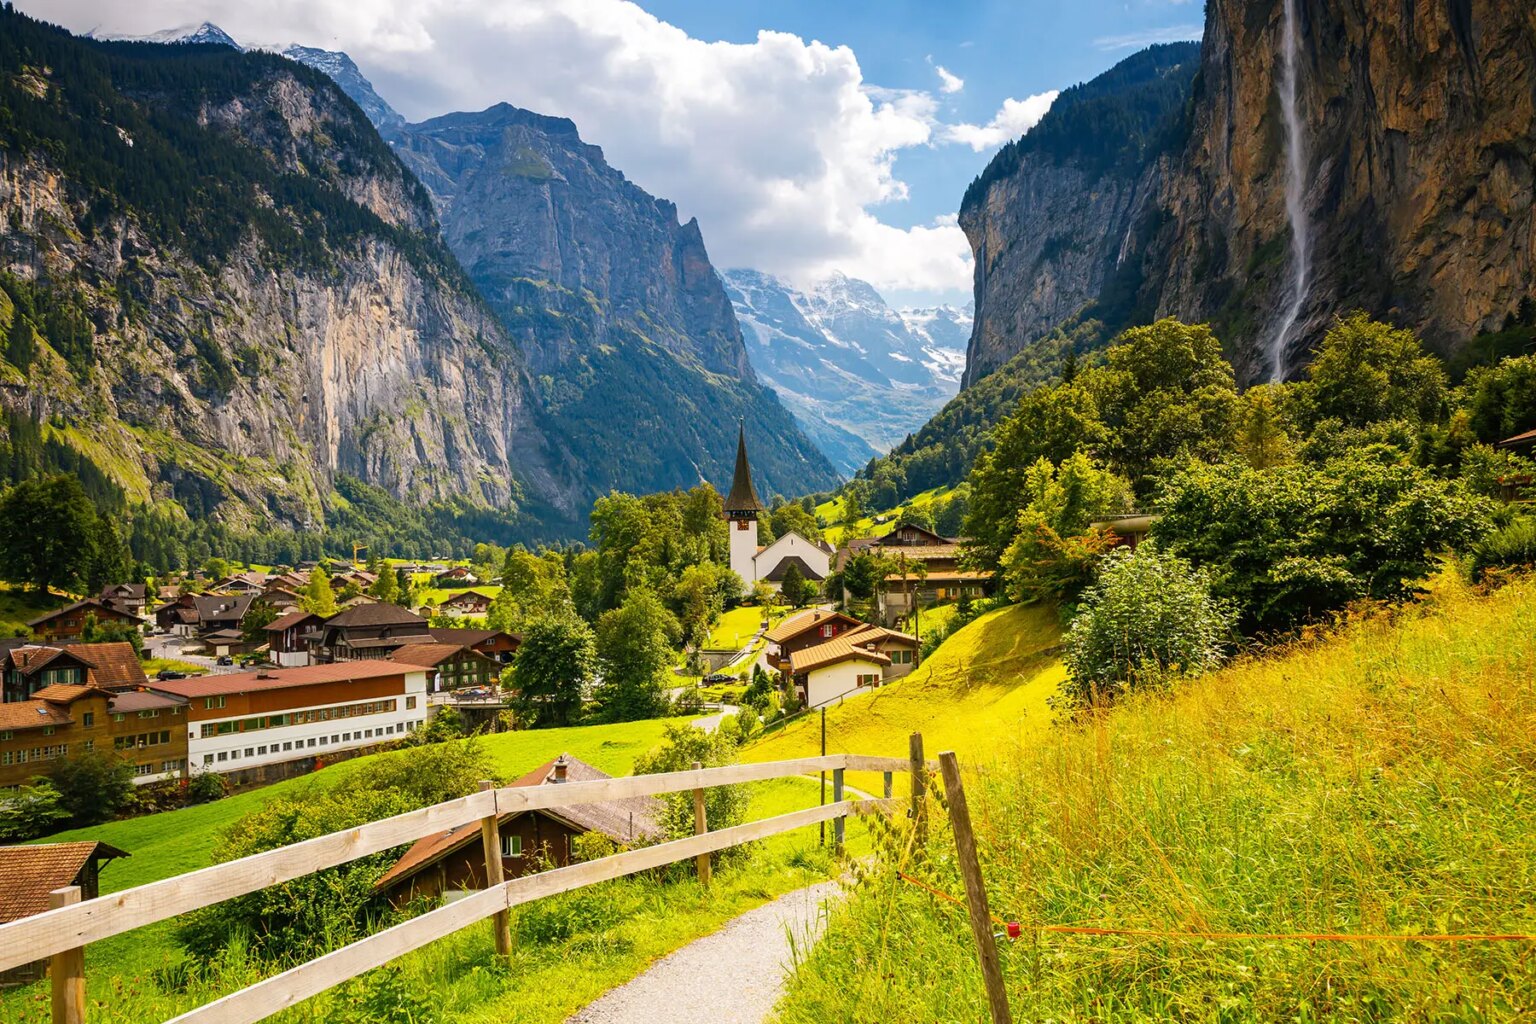 Towns in Switzerland